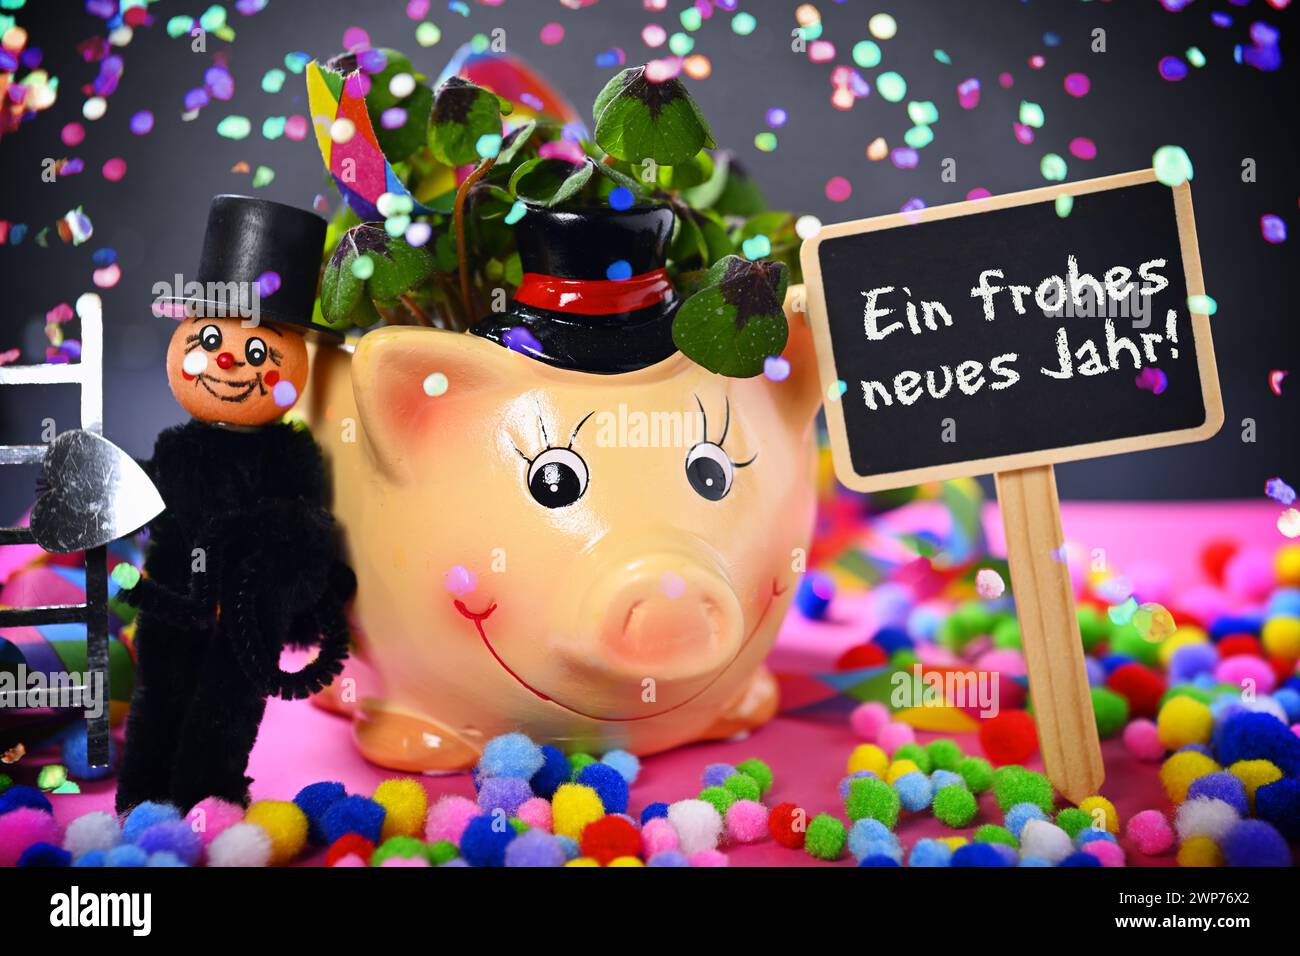 FOTOMONTAGE, Glücksschwein mit Kleeblättern, Schornsteinfegerfigur und Schild mit Aufschrift Ein Frohes neues Jahr! mit Konfetti Banque D'Images